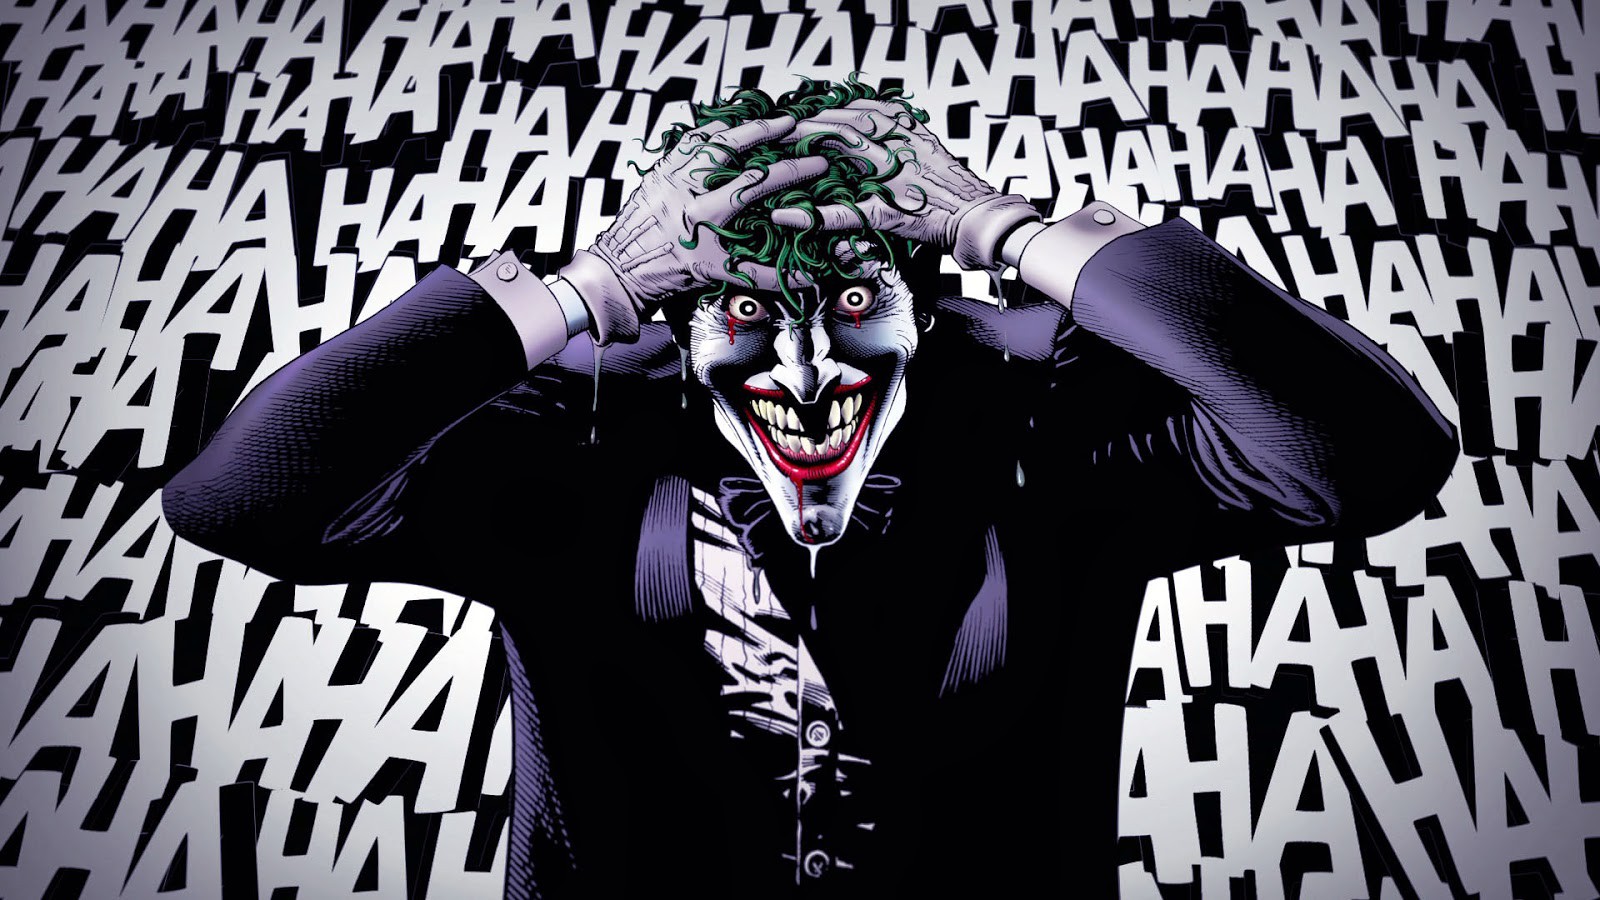 Posłuchajcie Jokera w wykonaniu mistrza